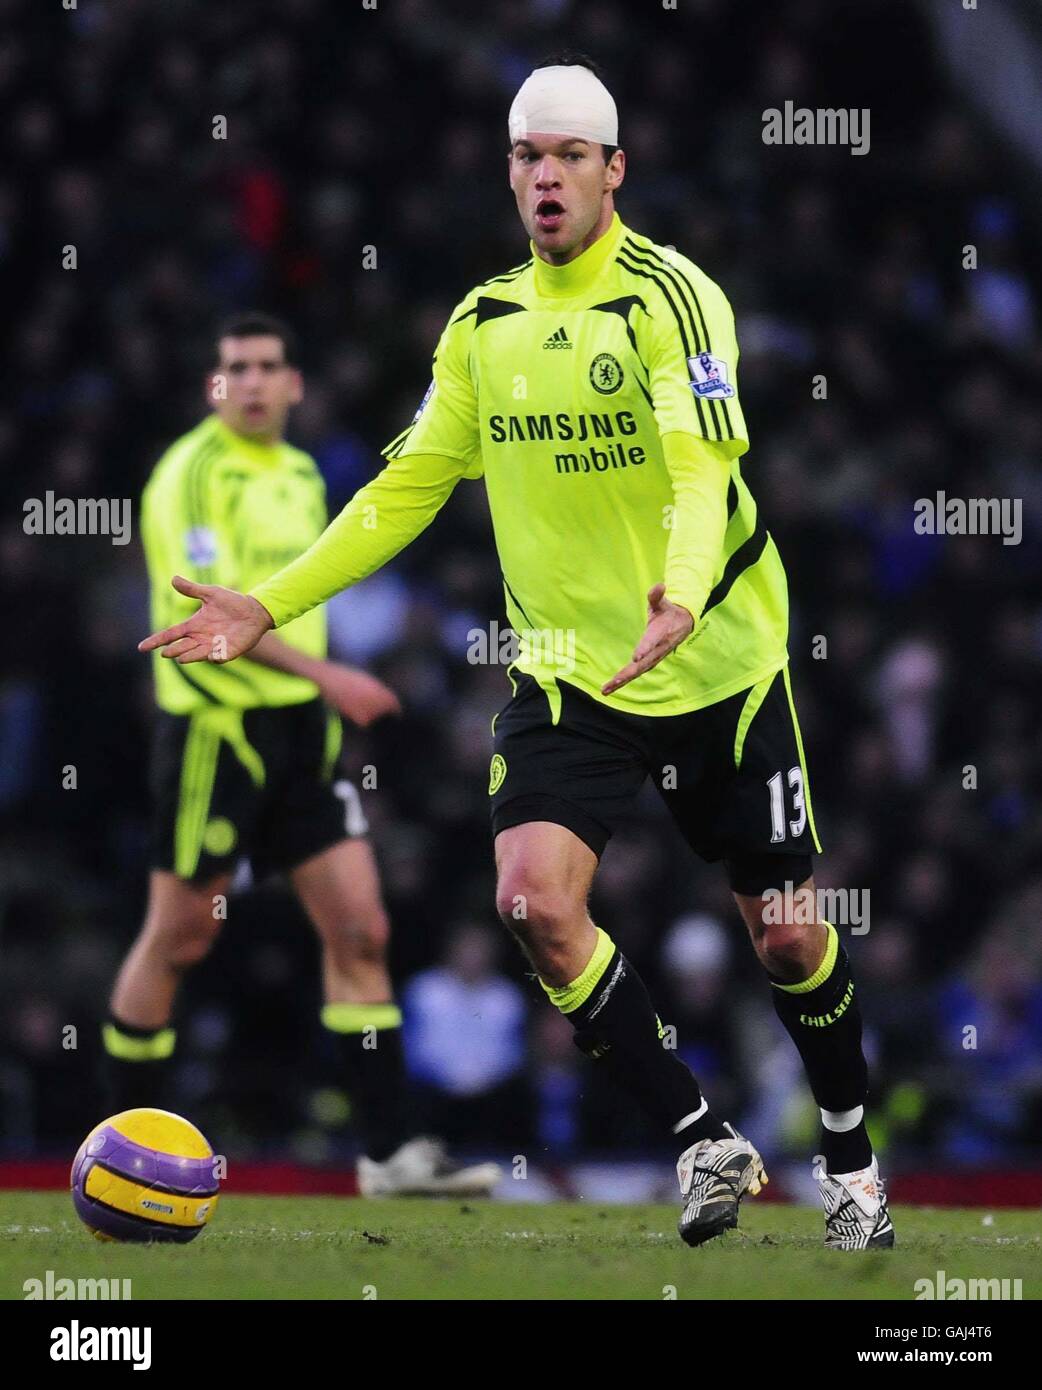 Michael Ballack de Chelsea en action pendant le match de la première ligue de Barclay à Fratton Park, Portsmouth. Banque D'Images